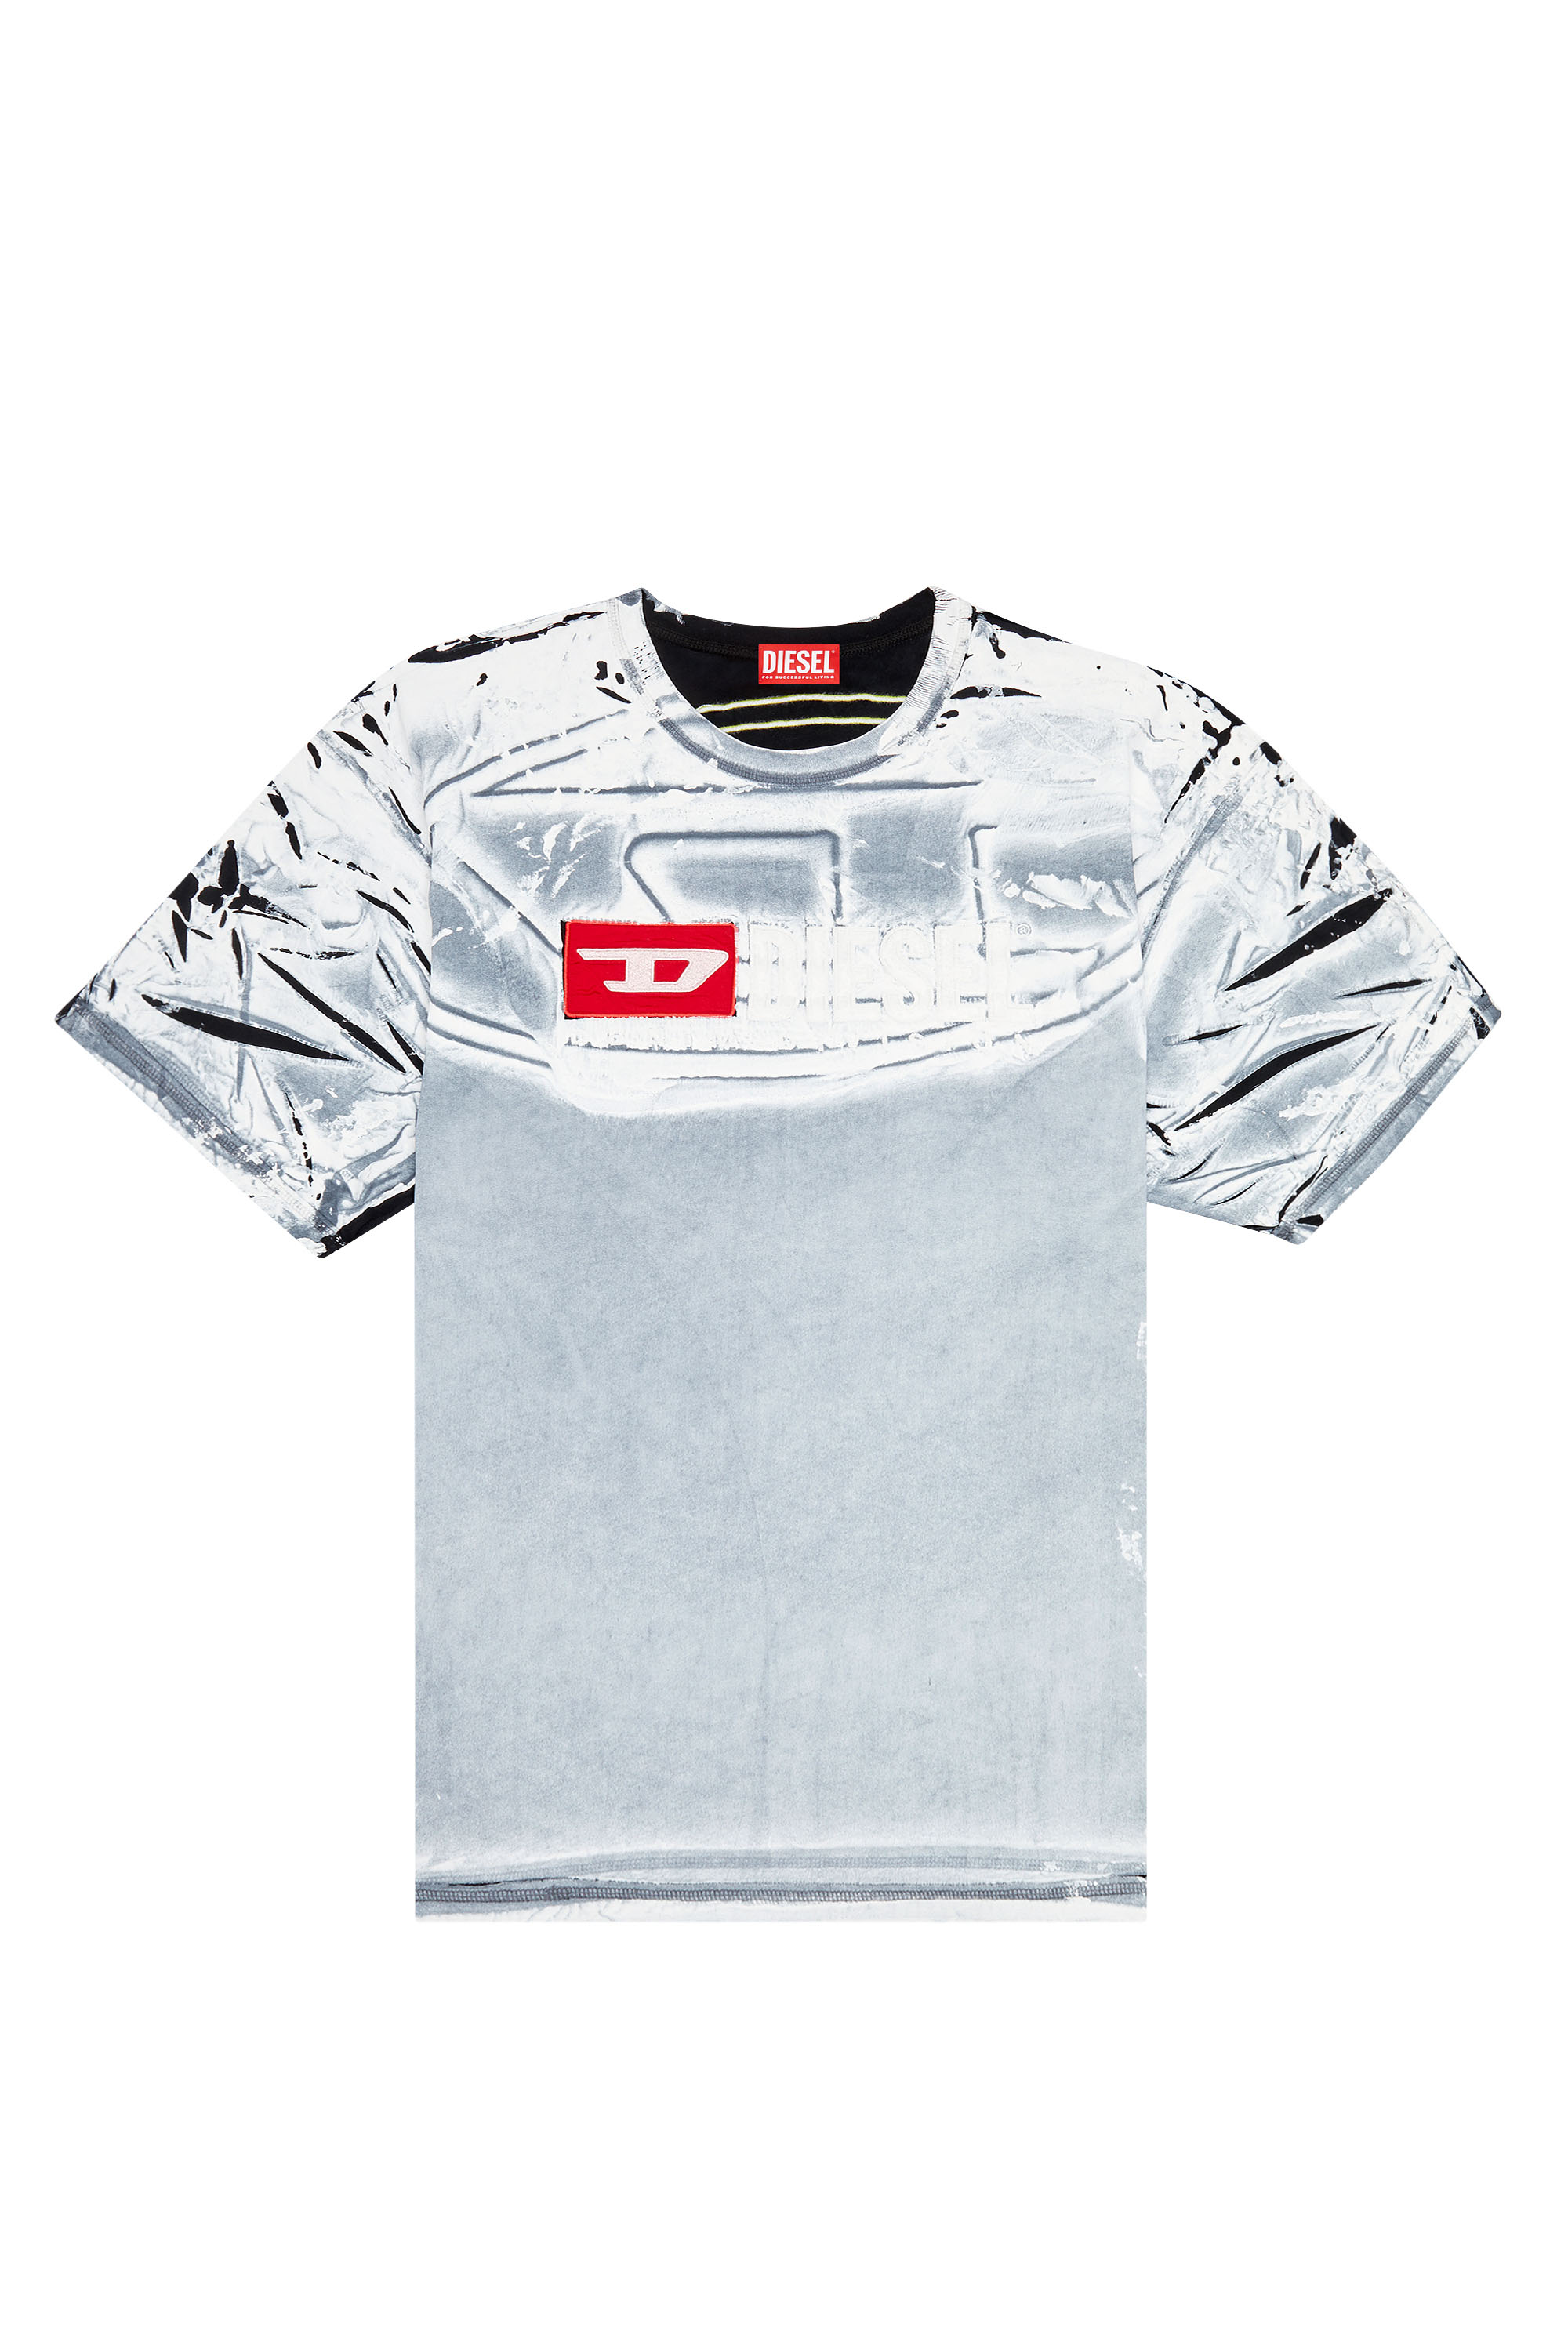 Diesel - T-OX, Homme T-shirt avec imprimé effet craie in Polychrome - Image 4